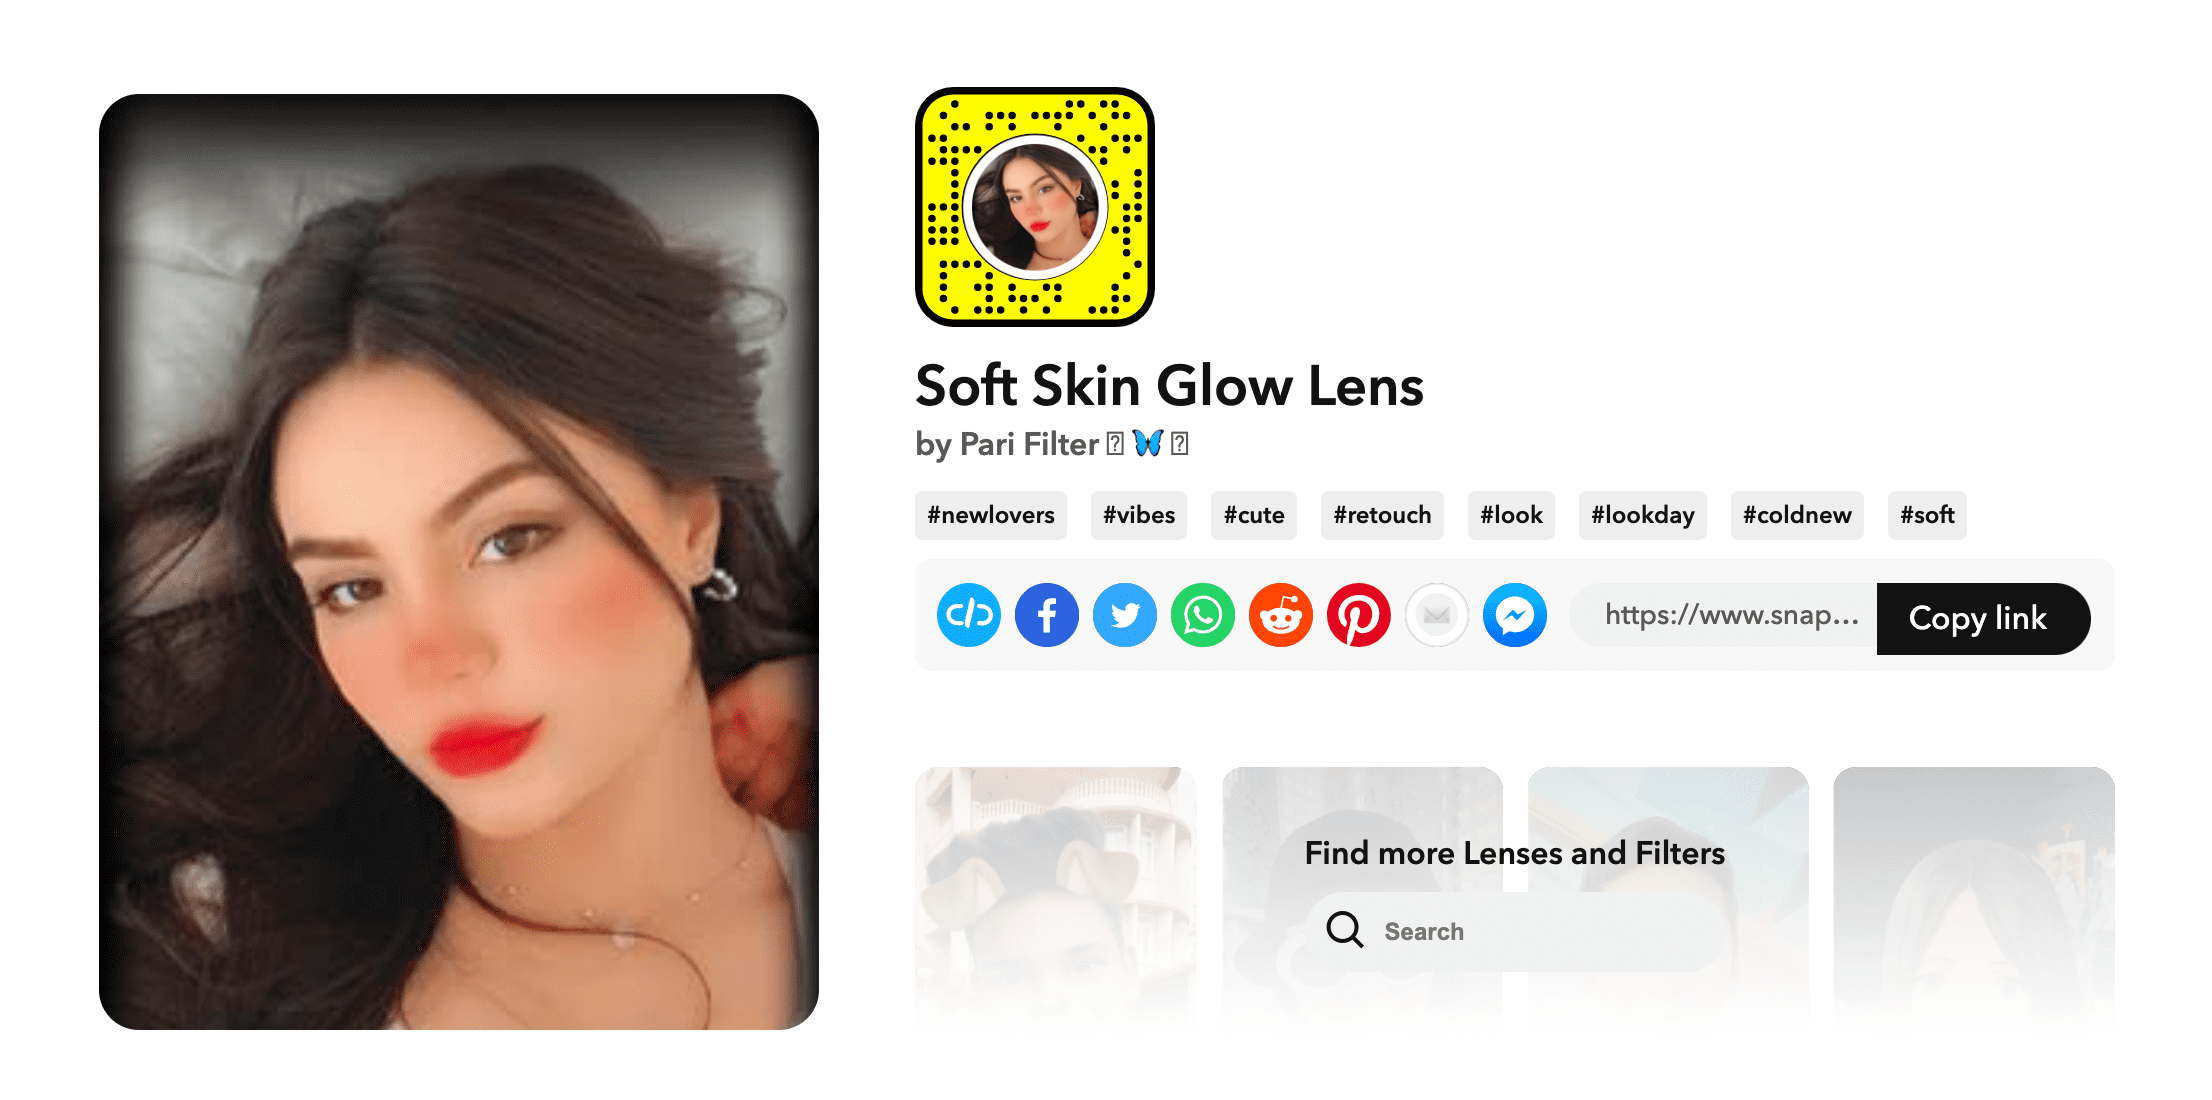 Soft Skin Glow